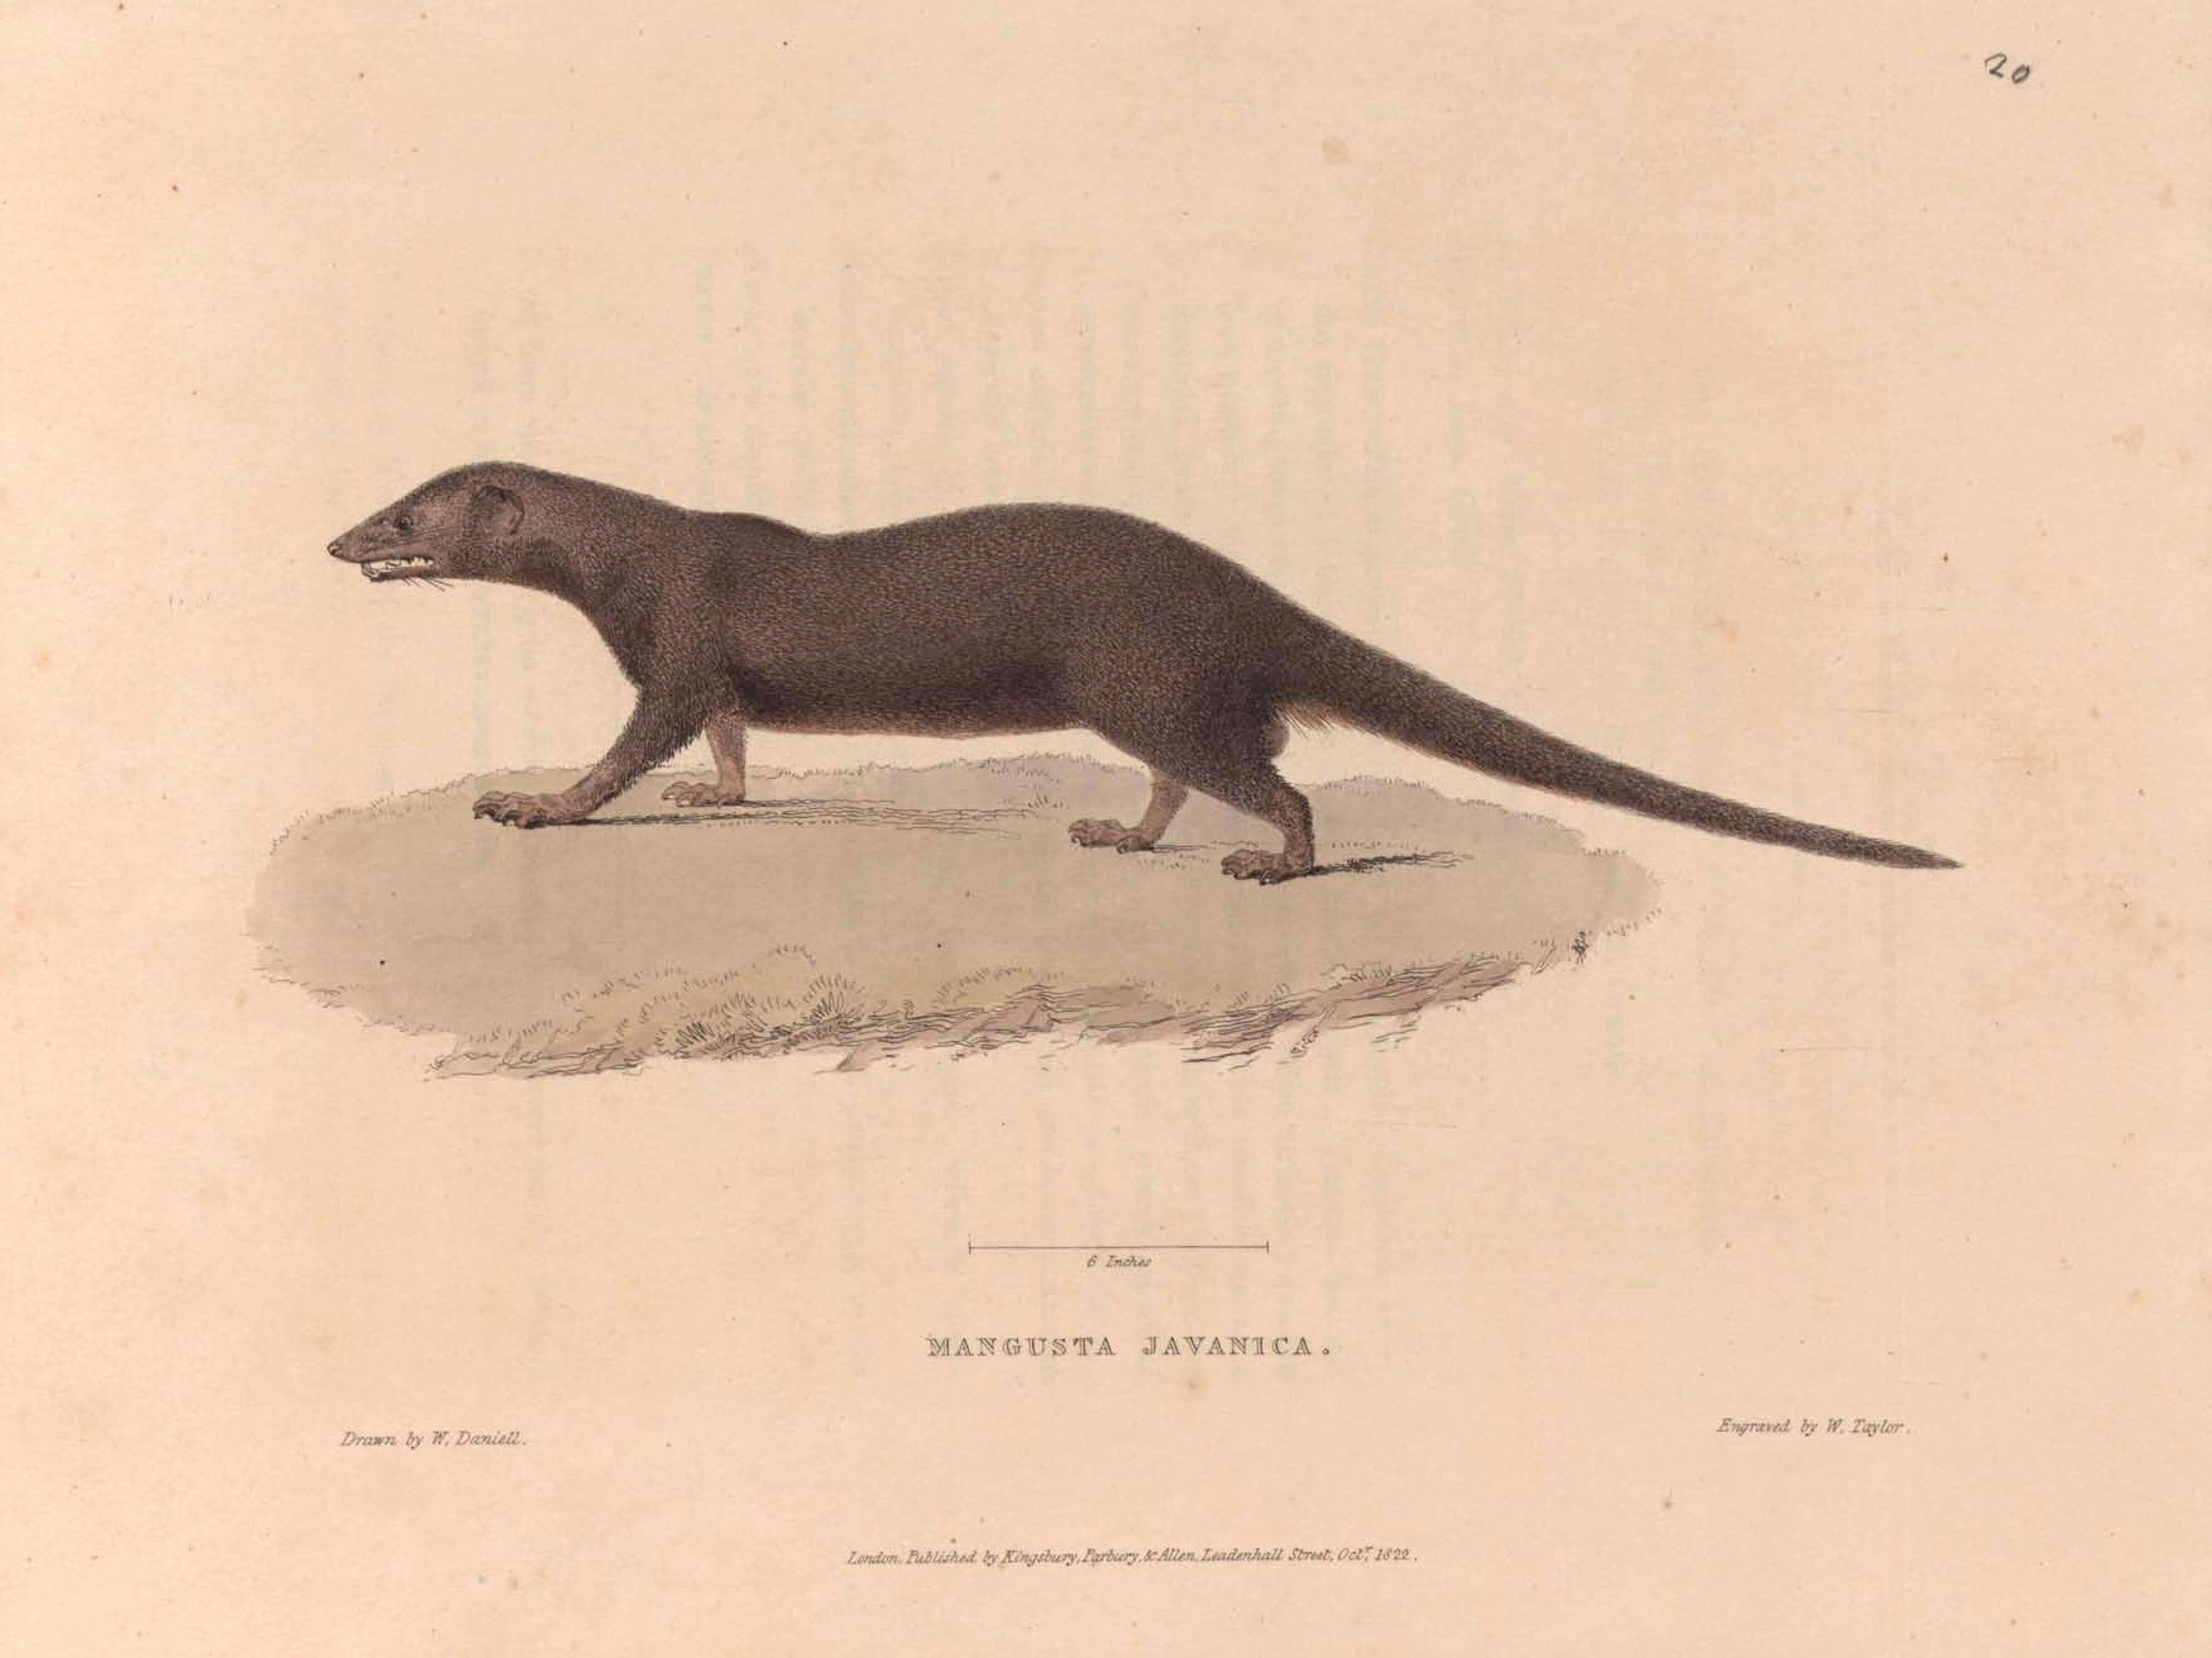 Image of Javan Mongoose